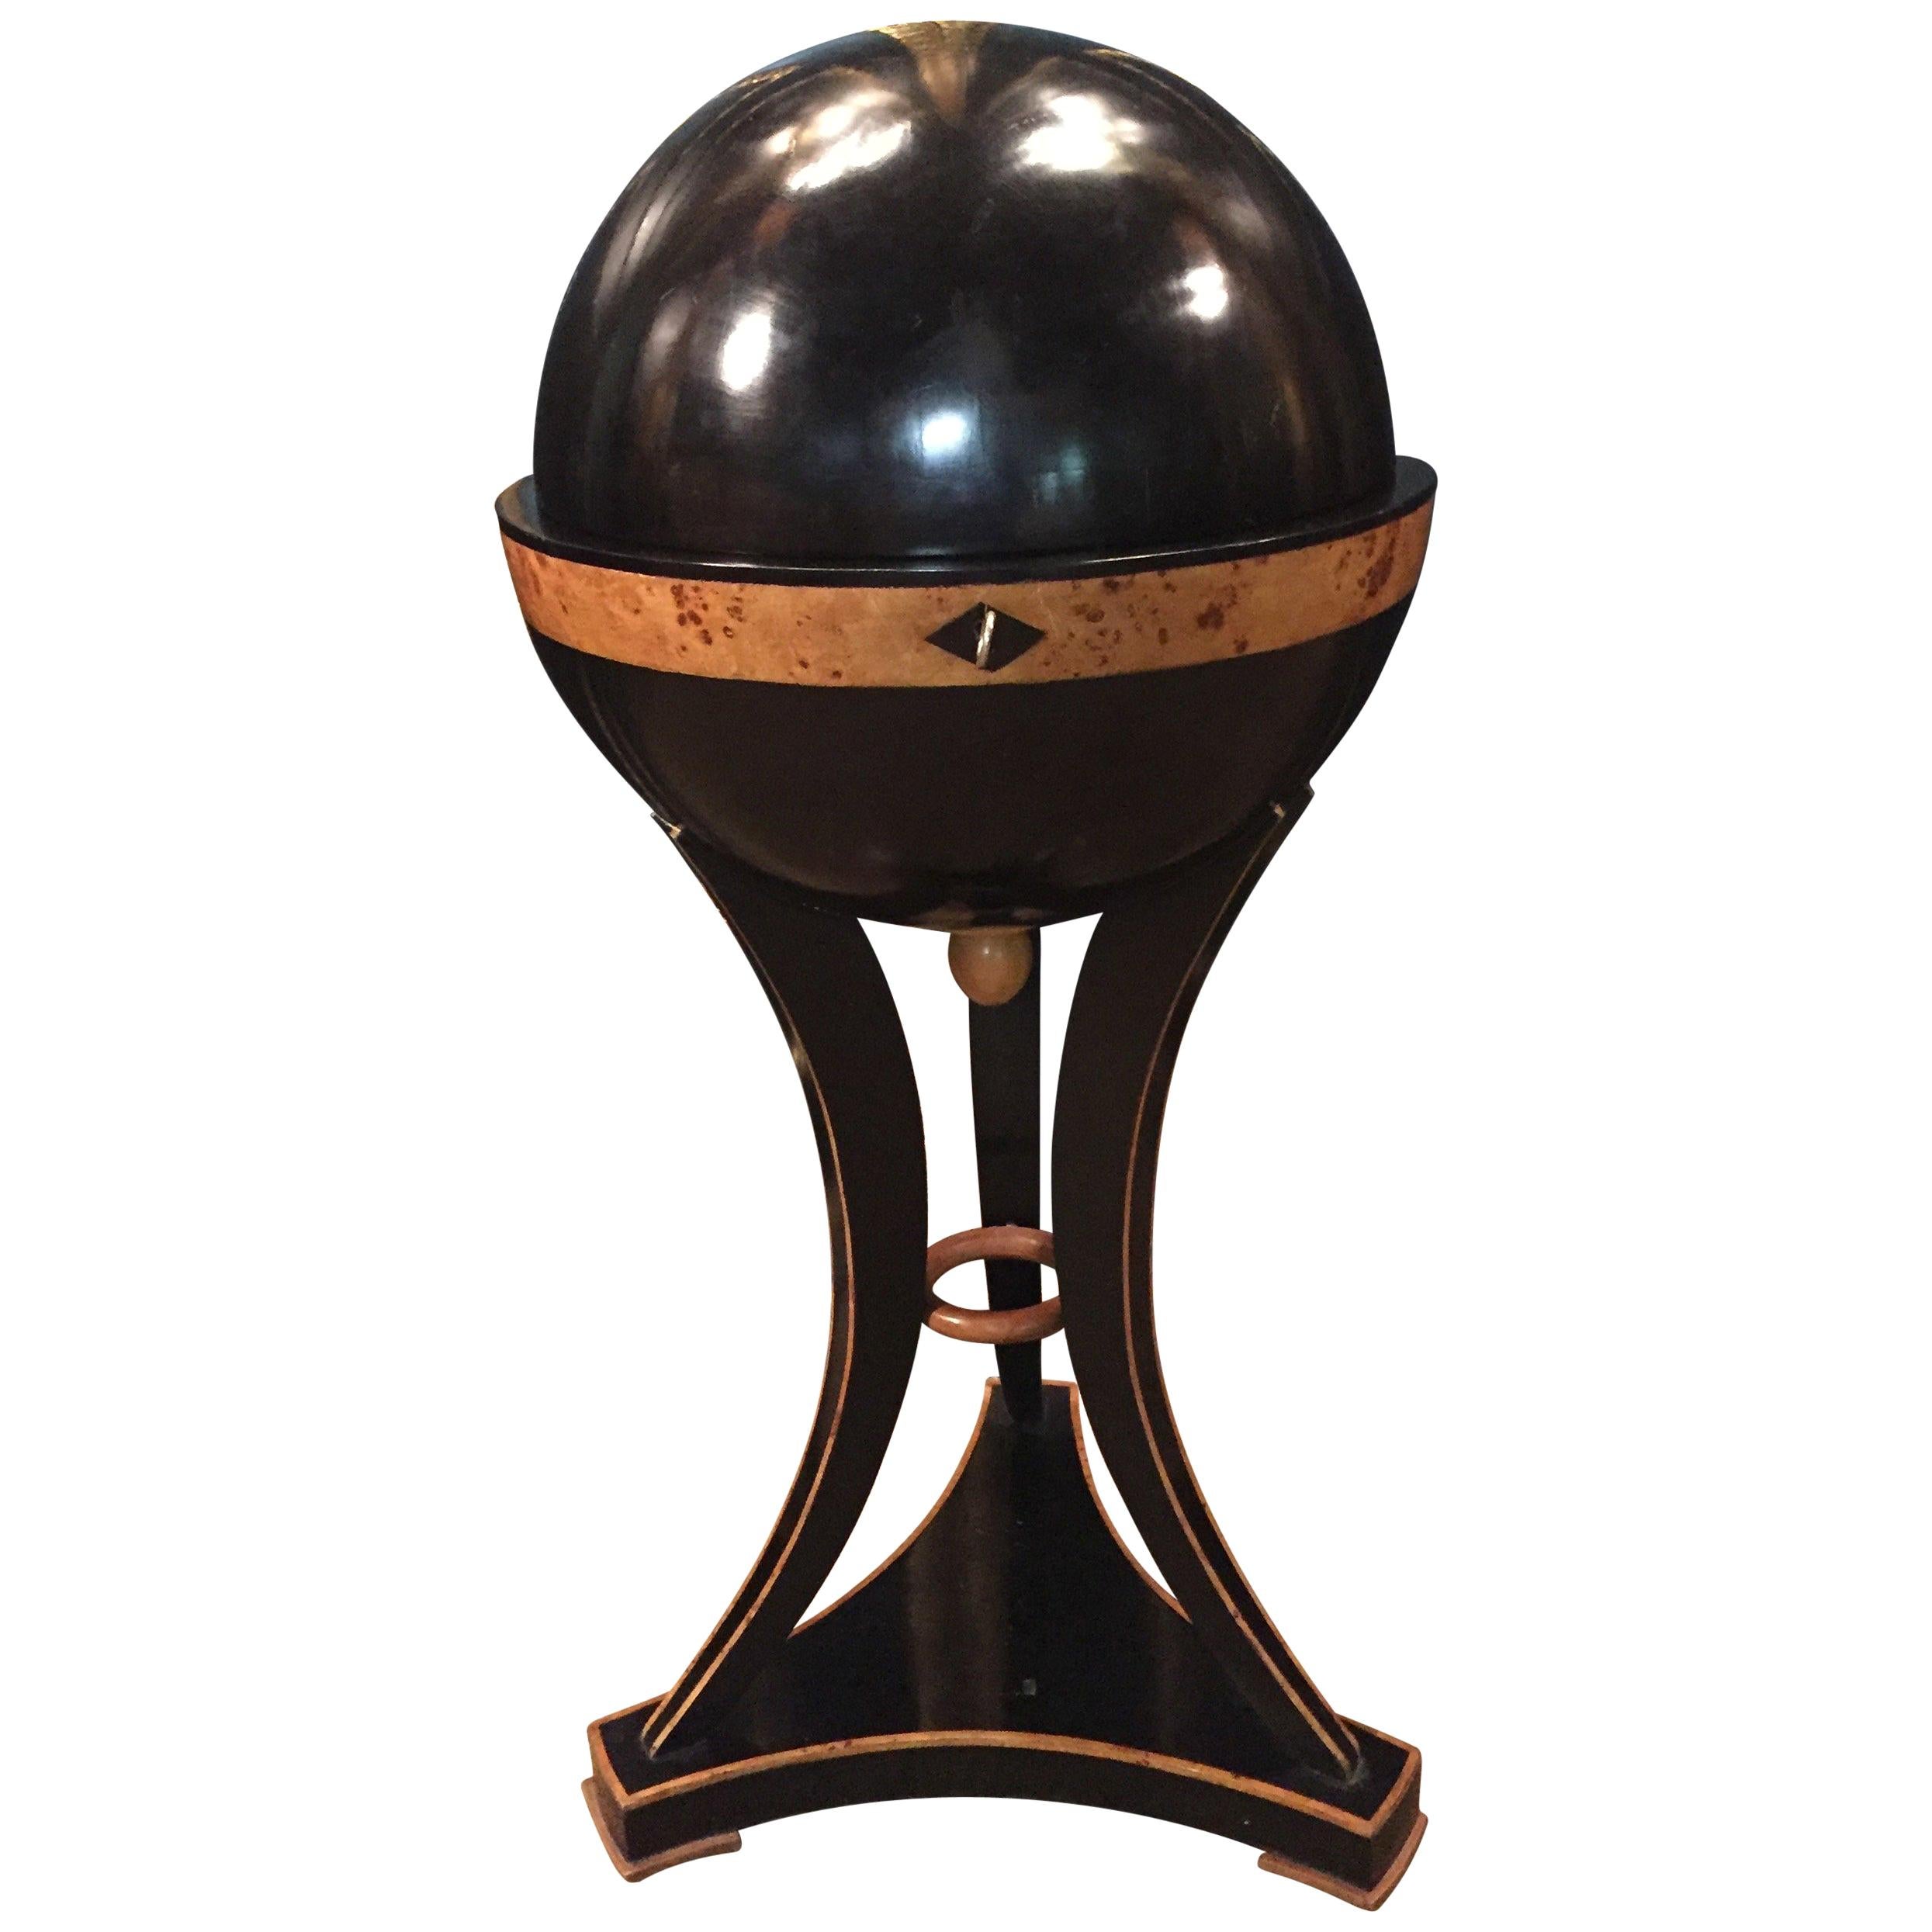 20th Century antique Vienna Biedermeier Style Globe Sewing Table beech veneer 